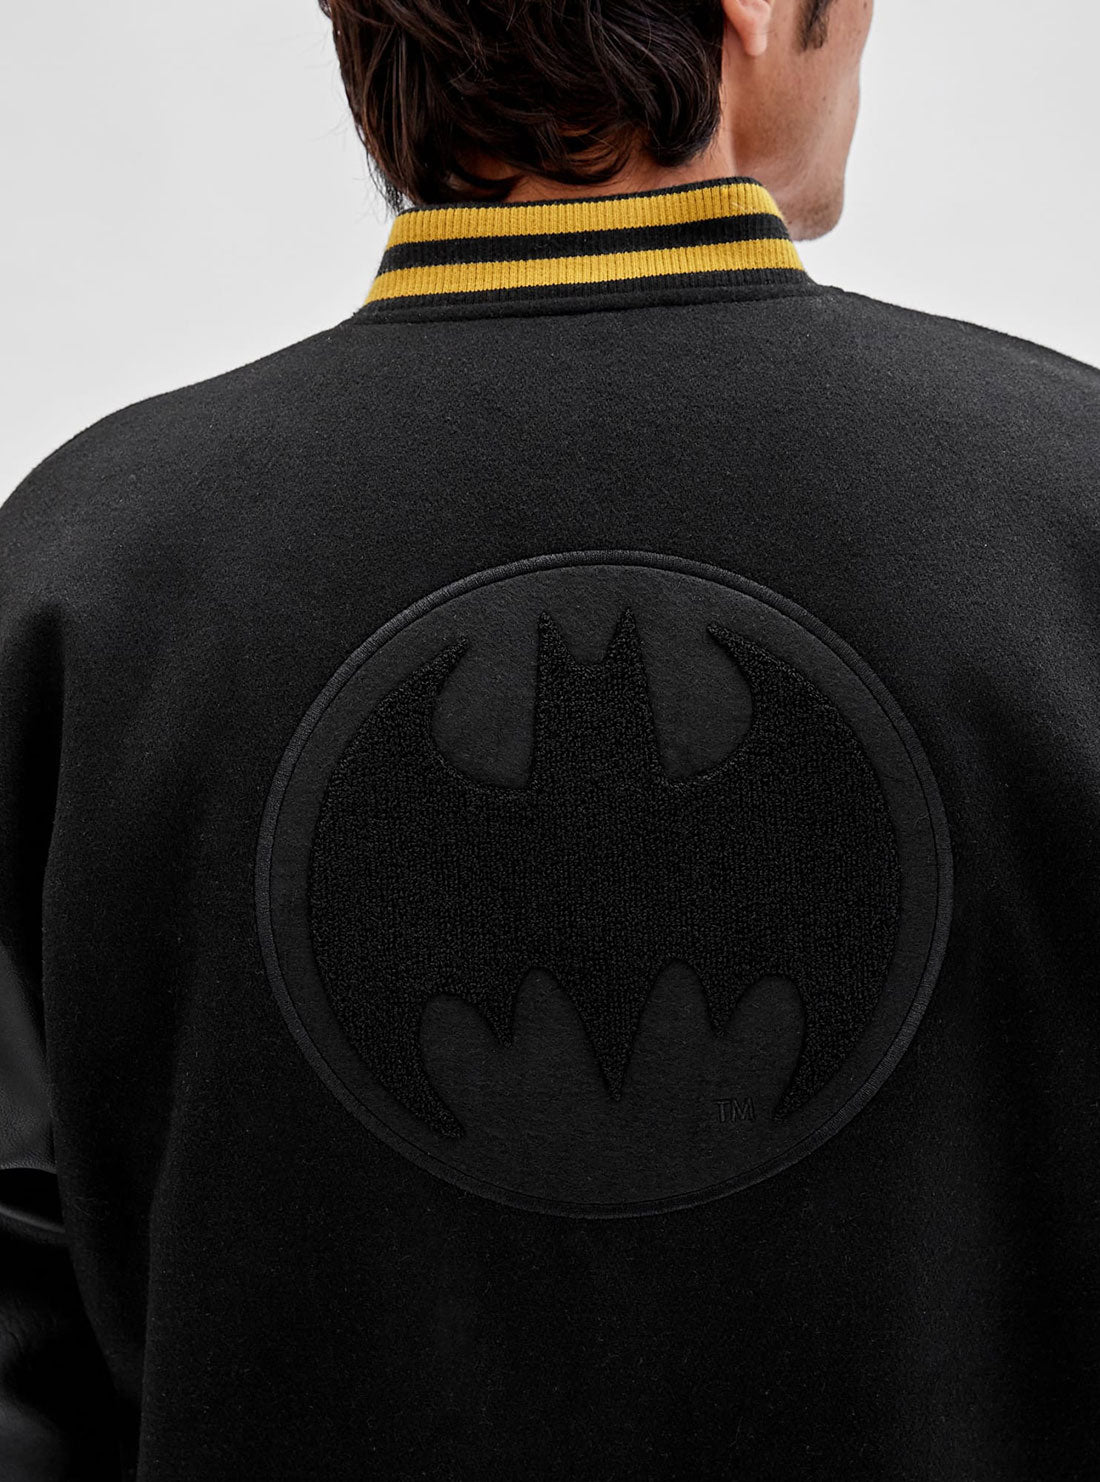 GUESS Men's Guess Originals x Batman Black Letterman Jacket M2BL08WEV60 Back Detail View